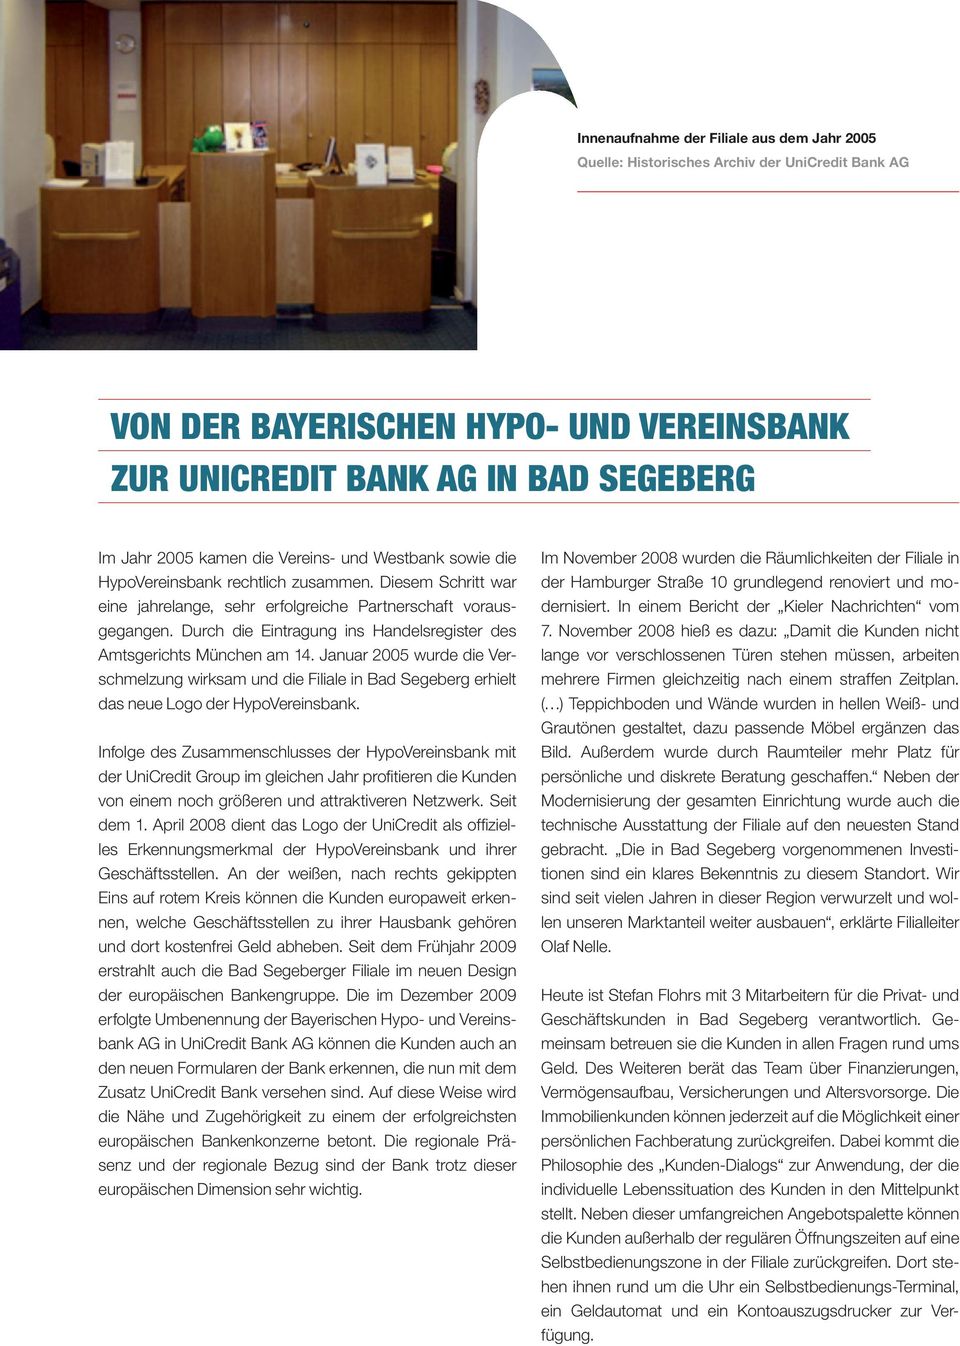 Durch die Eintragung ins Handelsregister des Amtsgerichts München am 14. Januar 2005 wurde die Verschmelzung wirksam und die Filiale in Bad Segeberg erhielt das neue Logo der HypoVereinsbank.